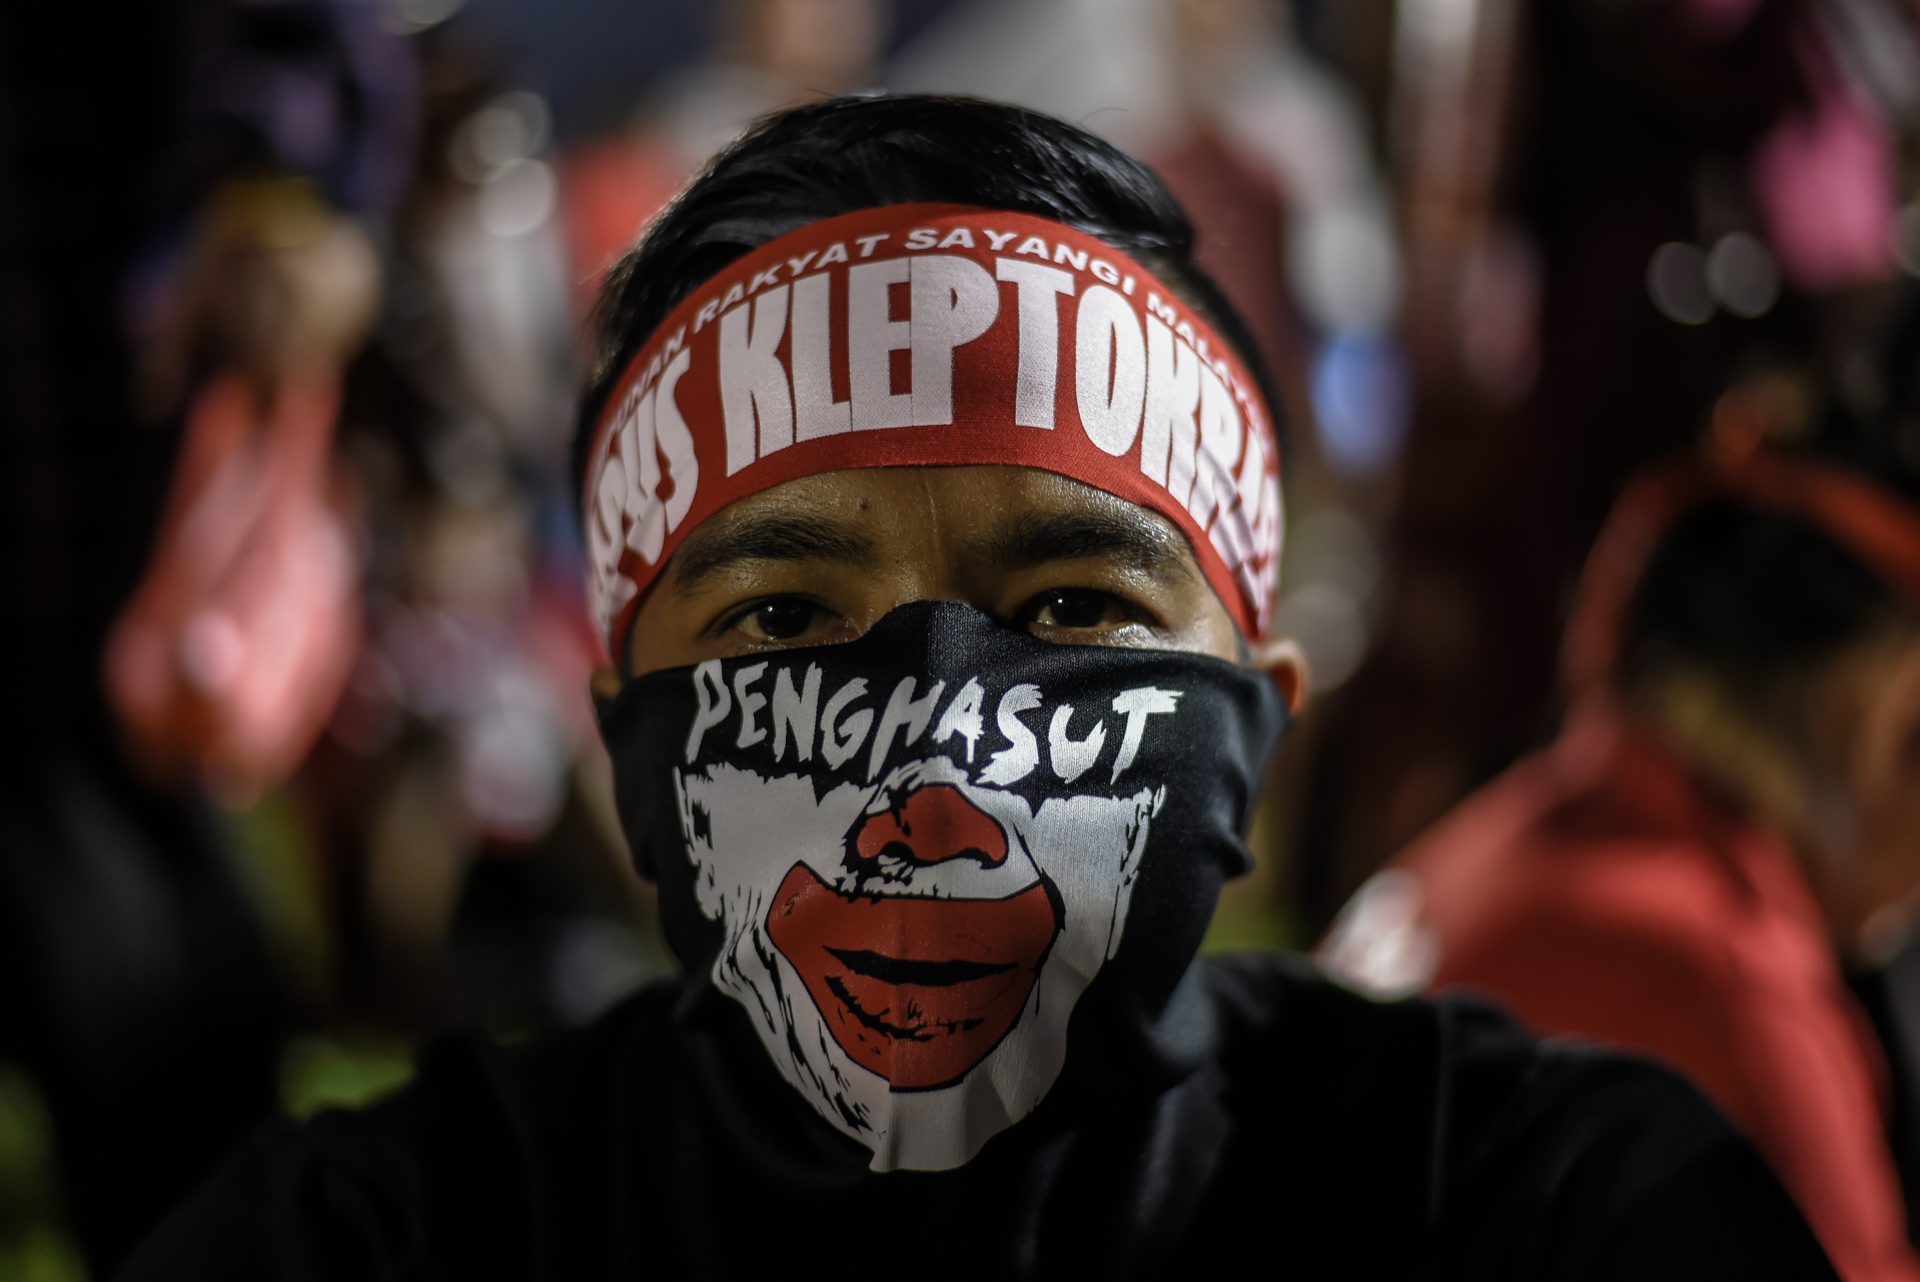 "Aimons la Malaisie et détruisons la kleptocratie", c'est ce qu'on peut lire sur le foulard de ce militant malaisien à l'occasion d'un meeting du Pakatan Harapan (Pacte de l'Espoir), la coalition d'opposition coalition à Petaling Jaya, près de Kuala Lumpur le 14 octobre 2017. (Crédits : AFP PHOTO / MOHD RASFAN)